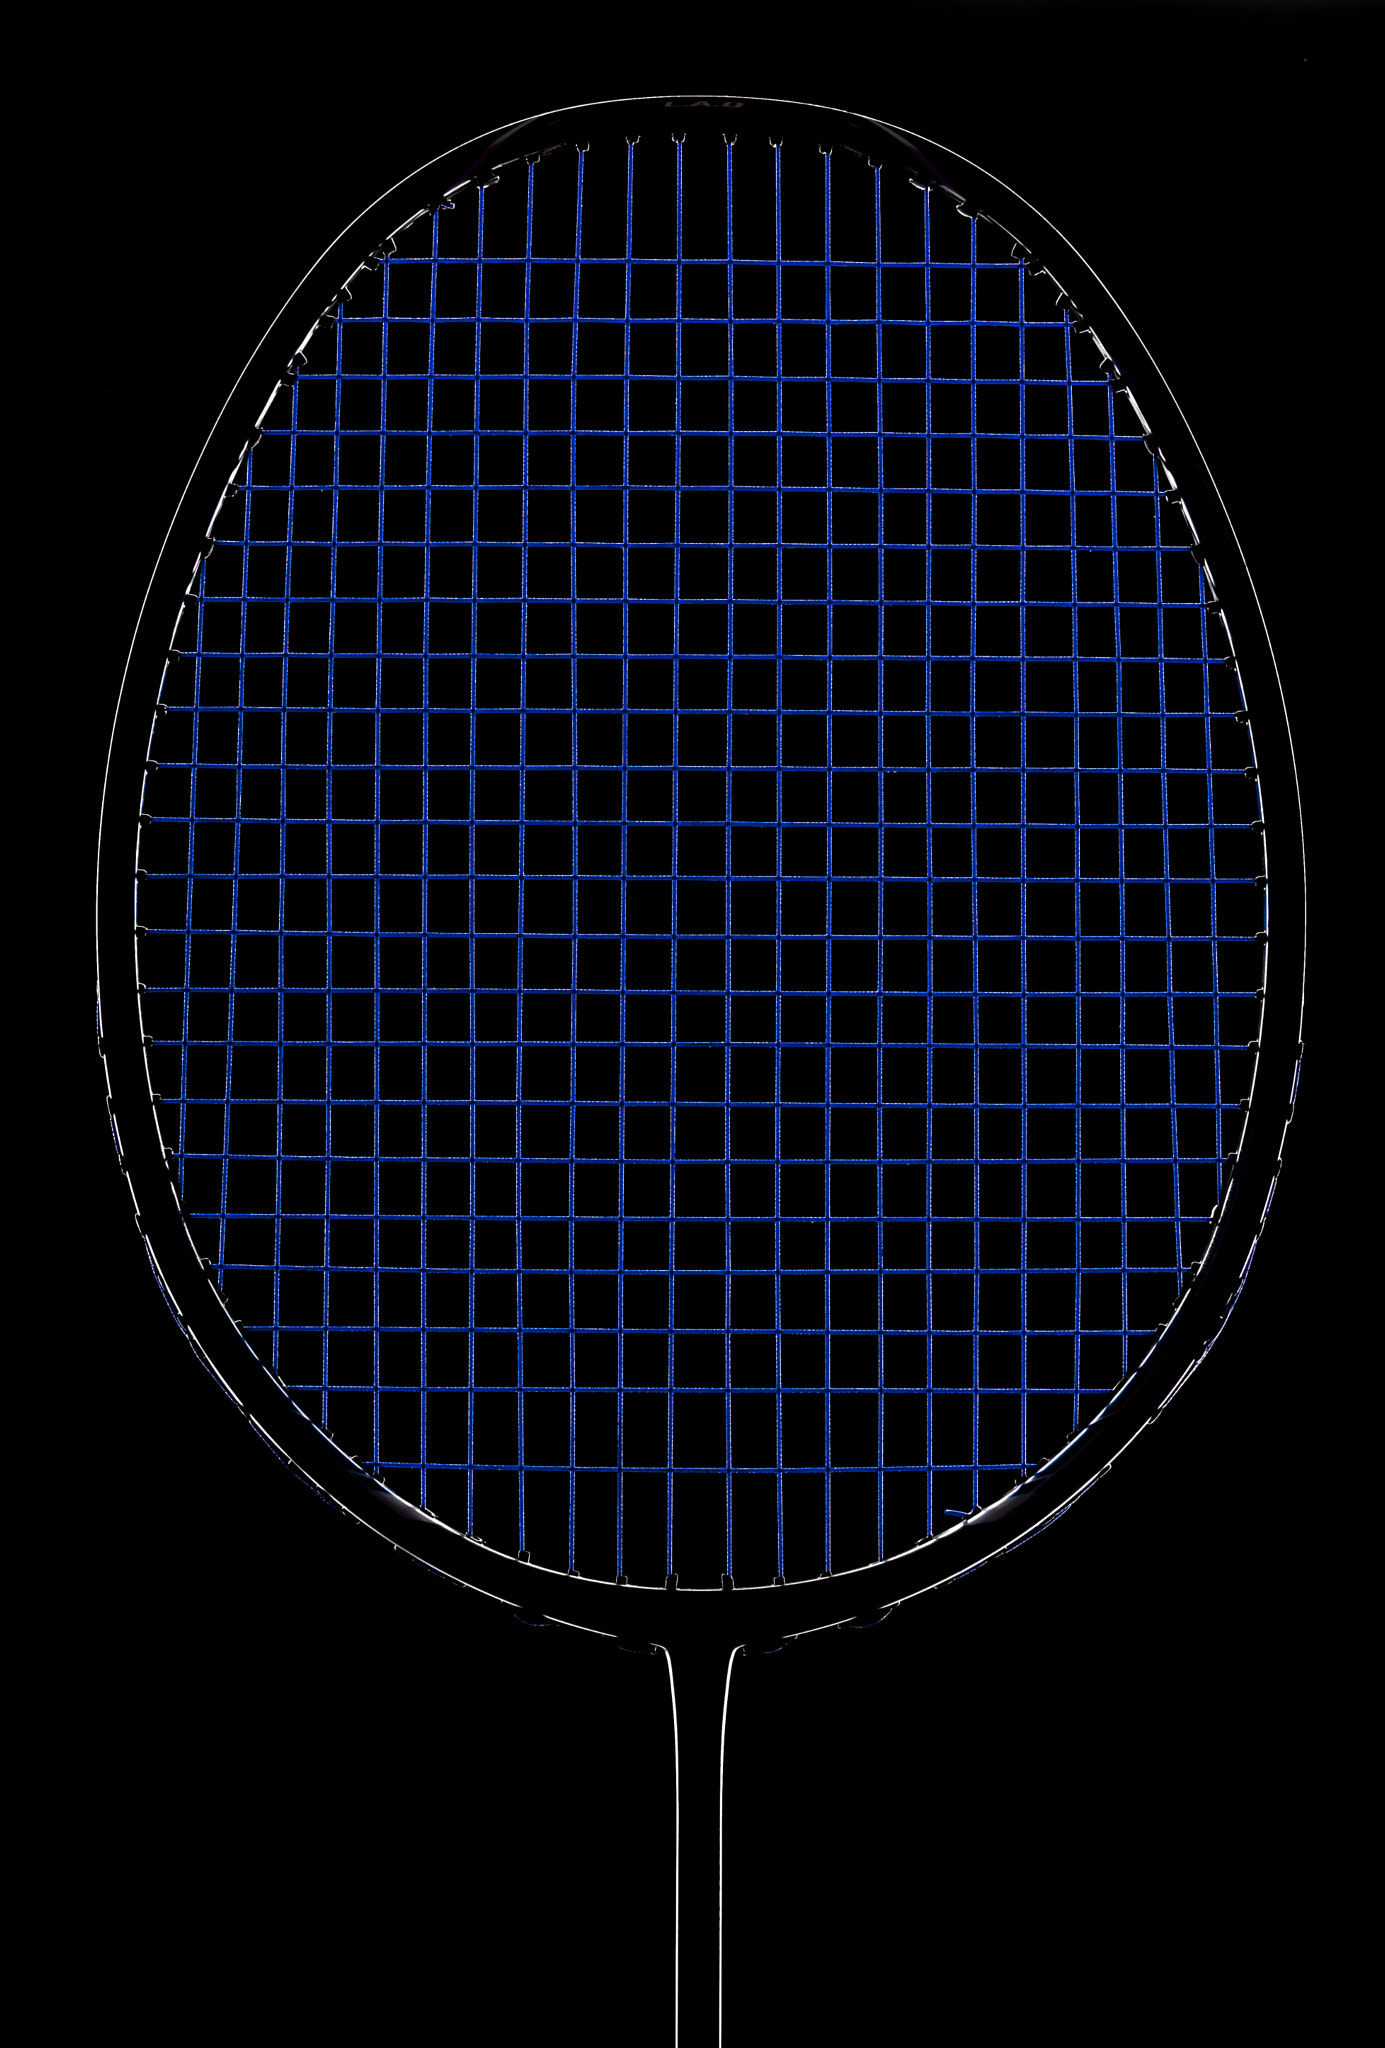 Nikon D3X + Nikon PC-E Micro-Nikkor 85mm F2.8D Tilt-Shift sample photo. Badminton racket photography